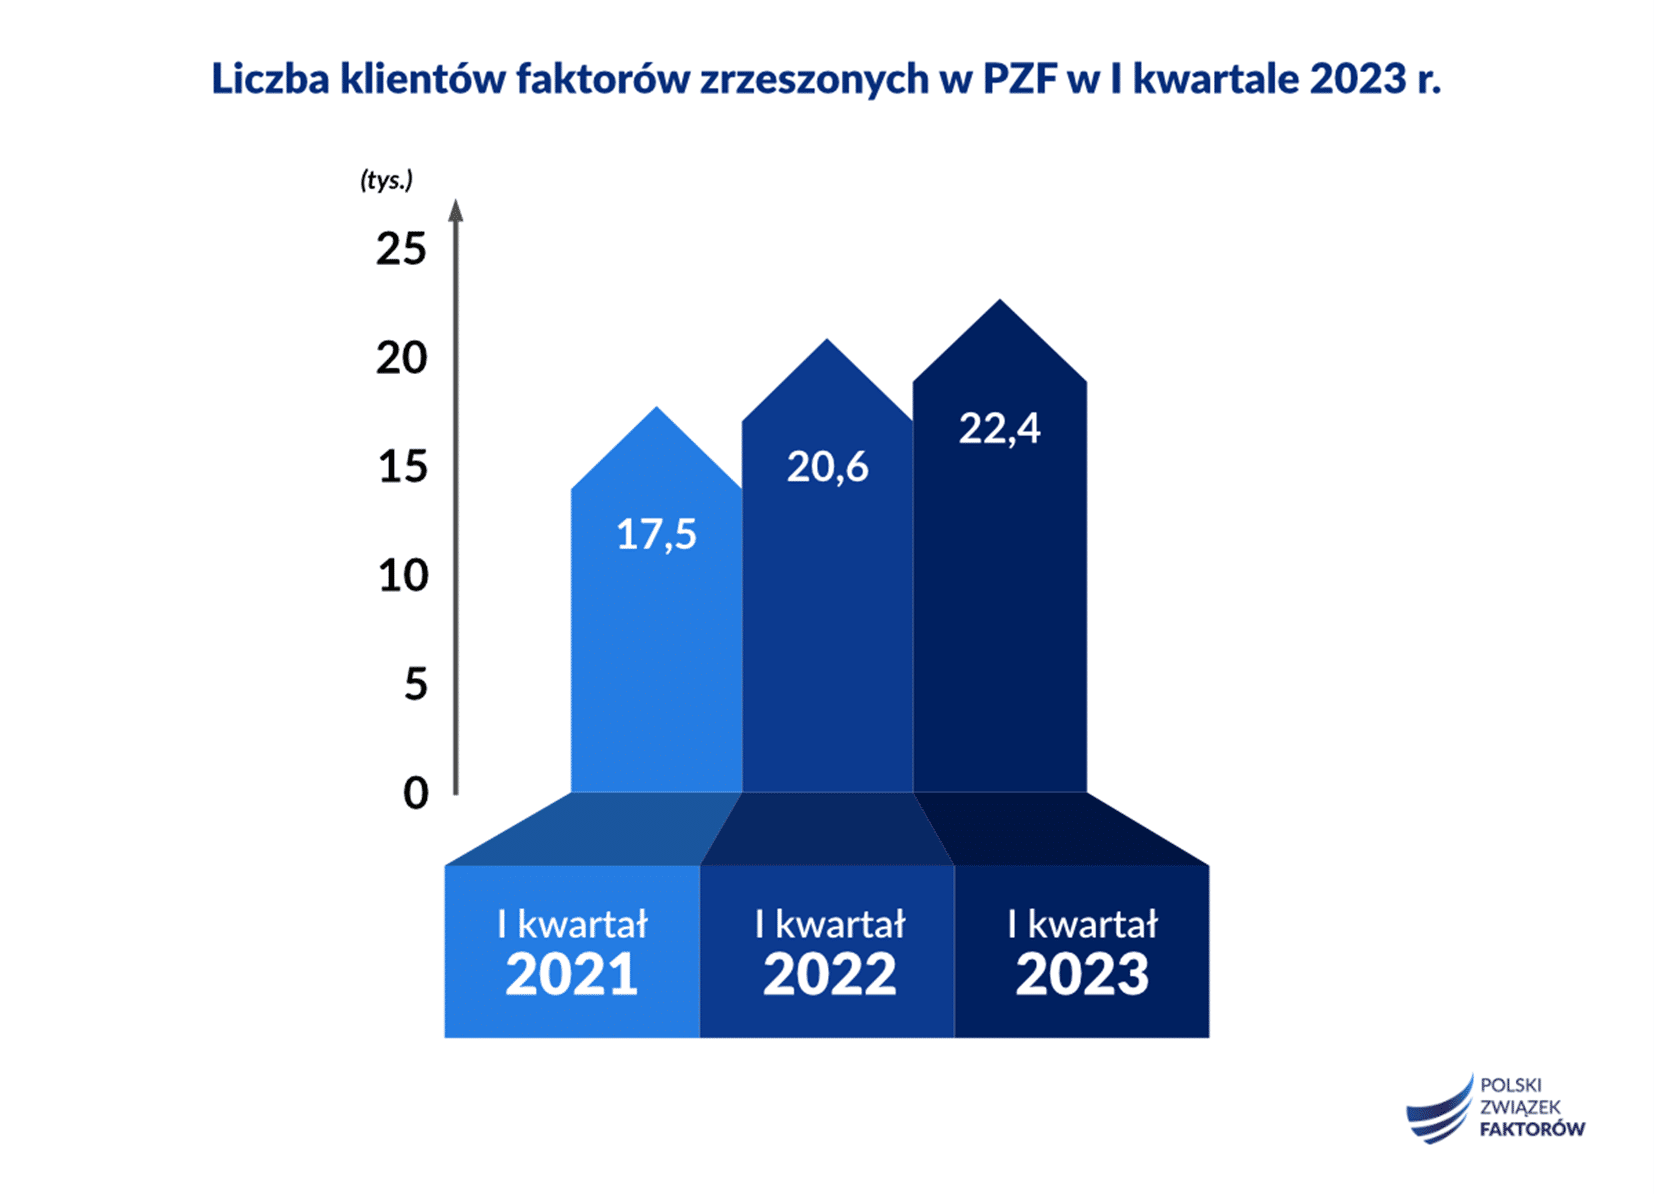 Polscy faktorzy sfinansowali w I kwartale 2023 3